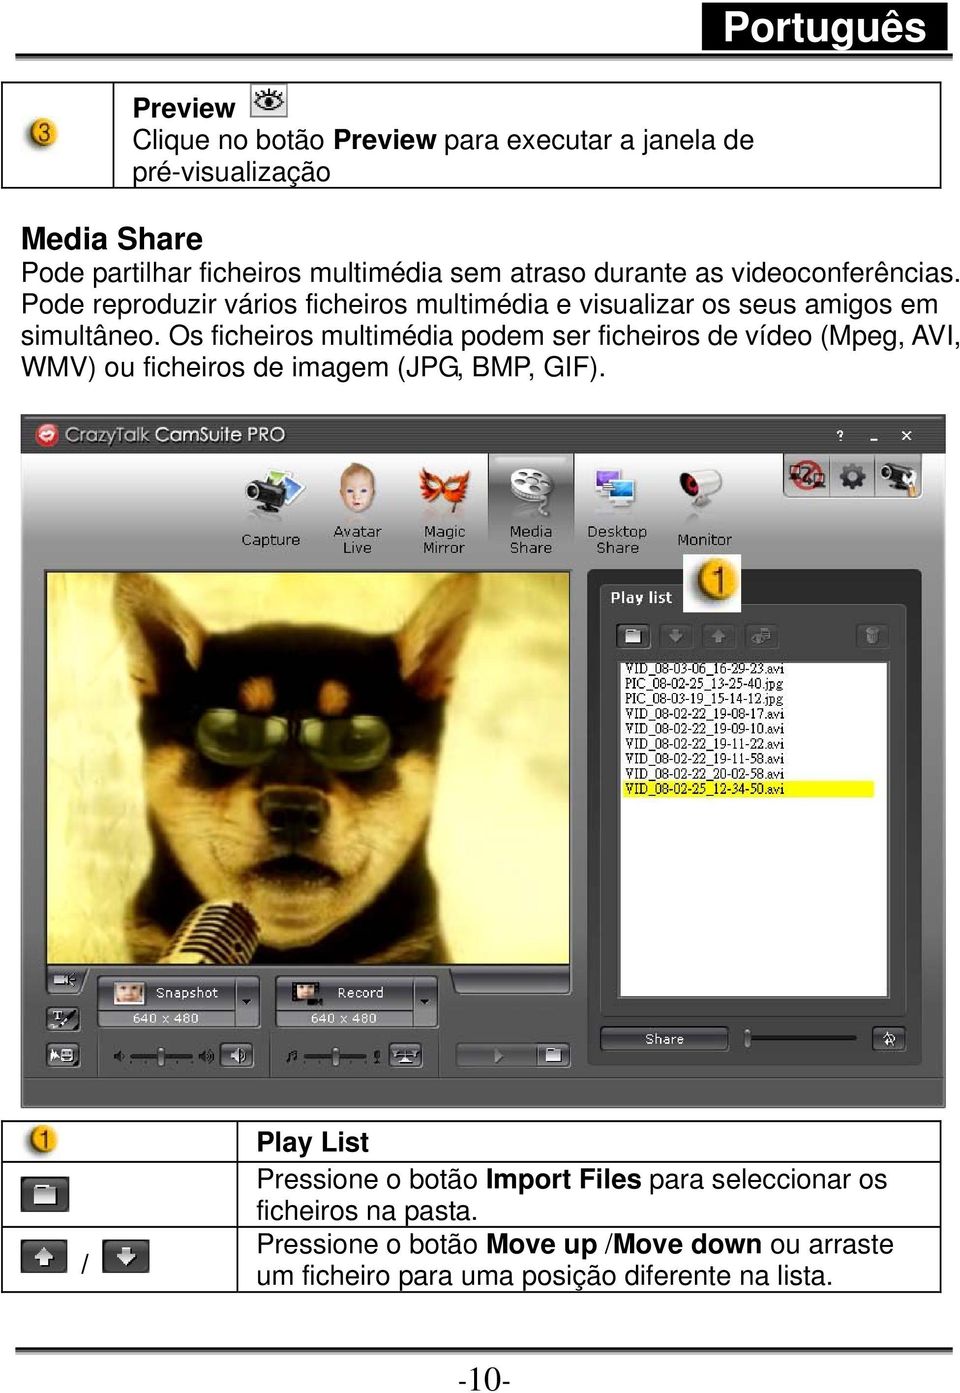 Os ficheiros multimédia podem ser ficheiros de vídeo (Mpeg, AVI, WMV) ou ficheiros de imagem (JPG, BMP, GIF).